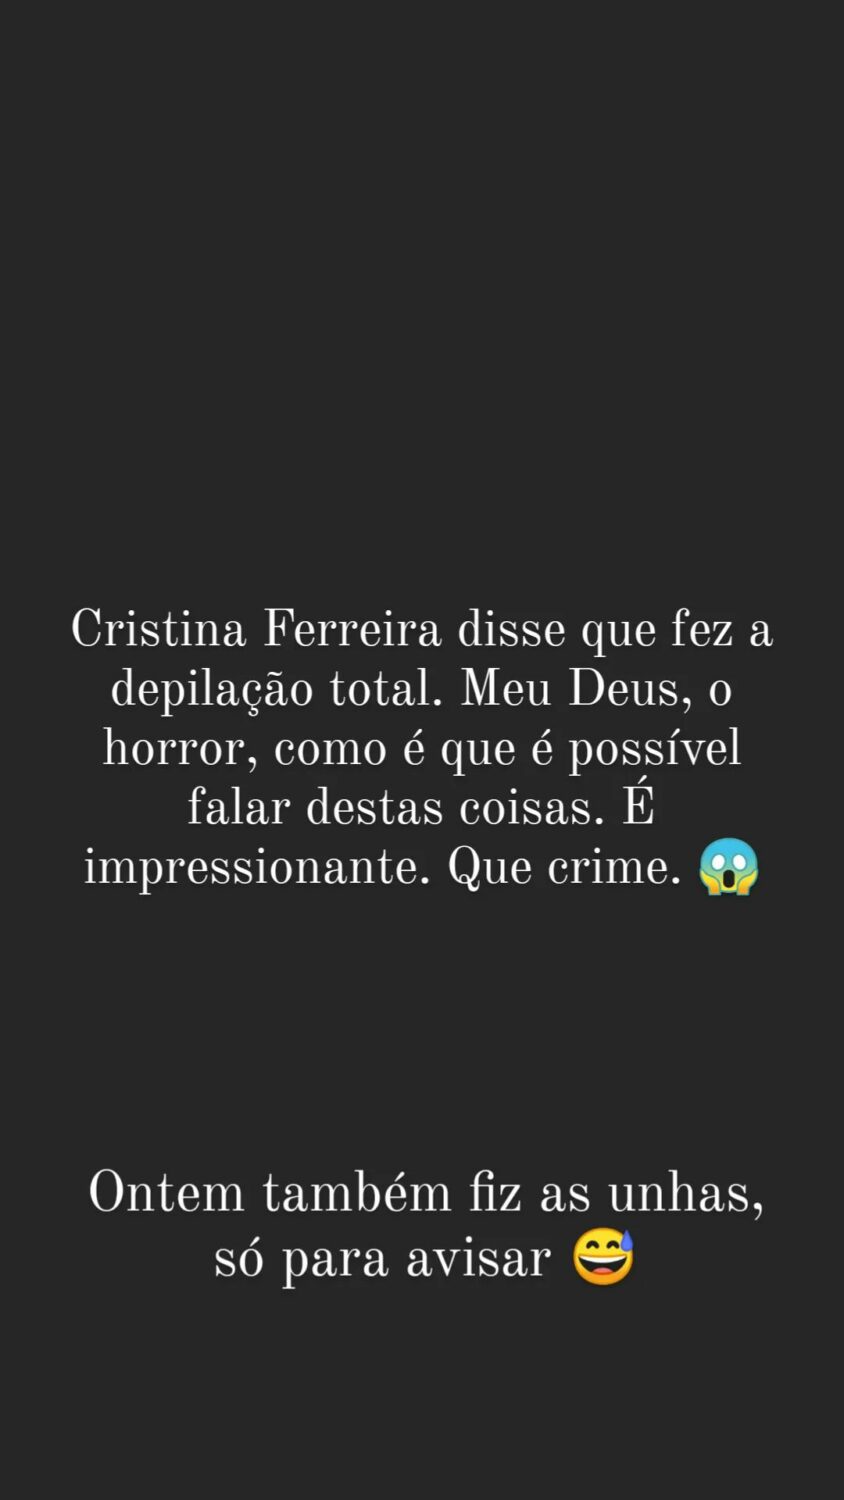 Depilação íntima? Cristina Ferreira reage: &#8220;O horror, como é que é possível falar destas coisas&#8221;